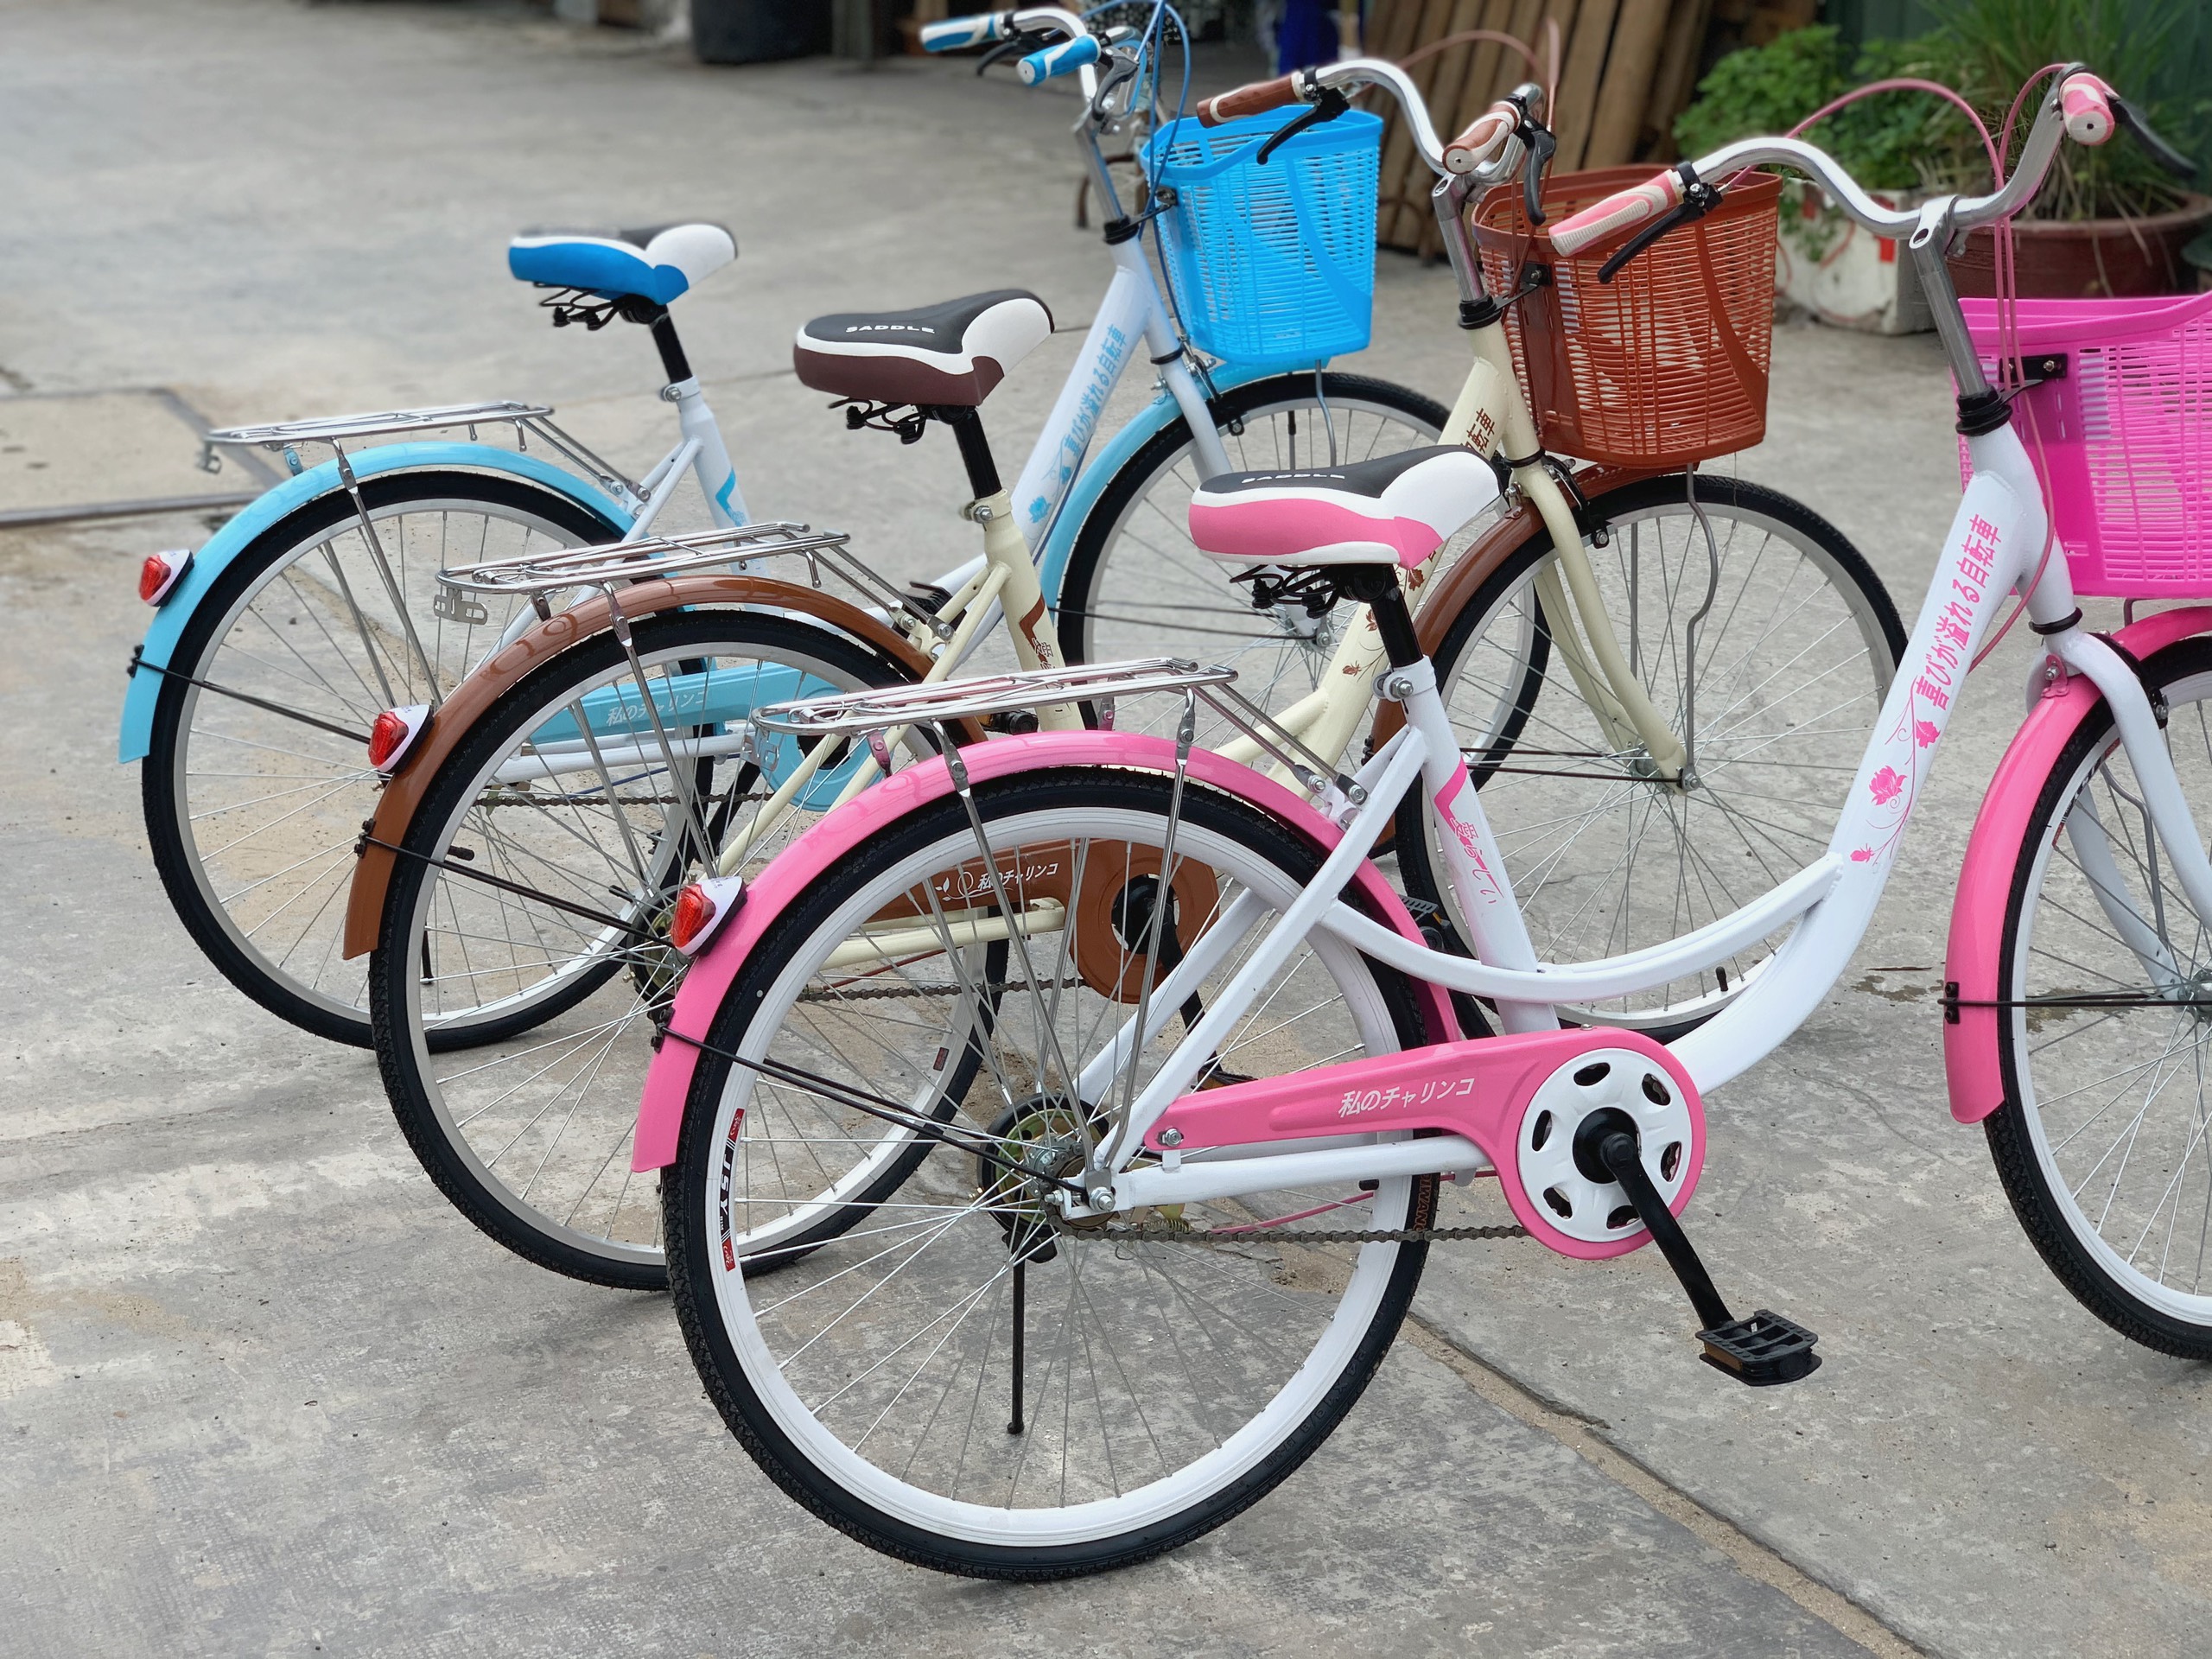 Xe đạp mini Nhật giá bao nhiêu và cụ thể từng dòng